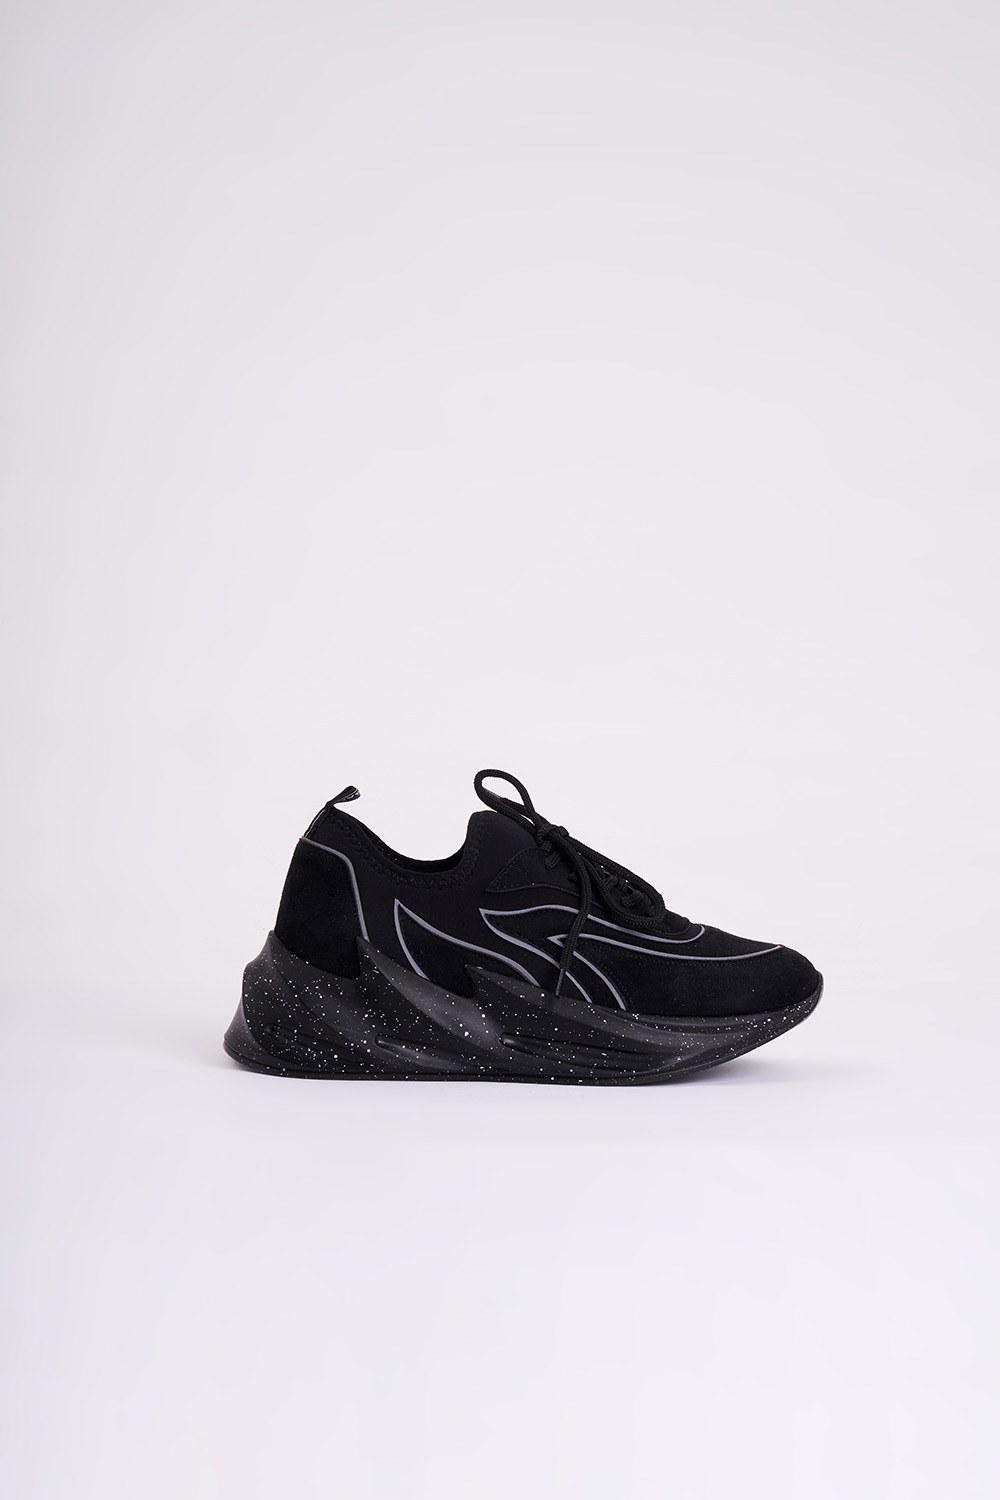 Patterned Scuba Sneakers (Black)